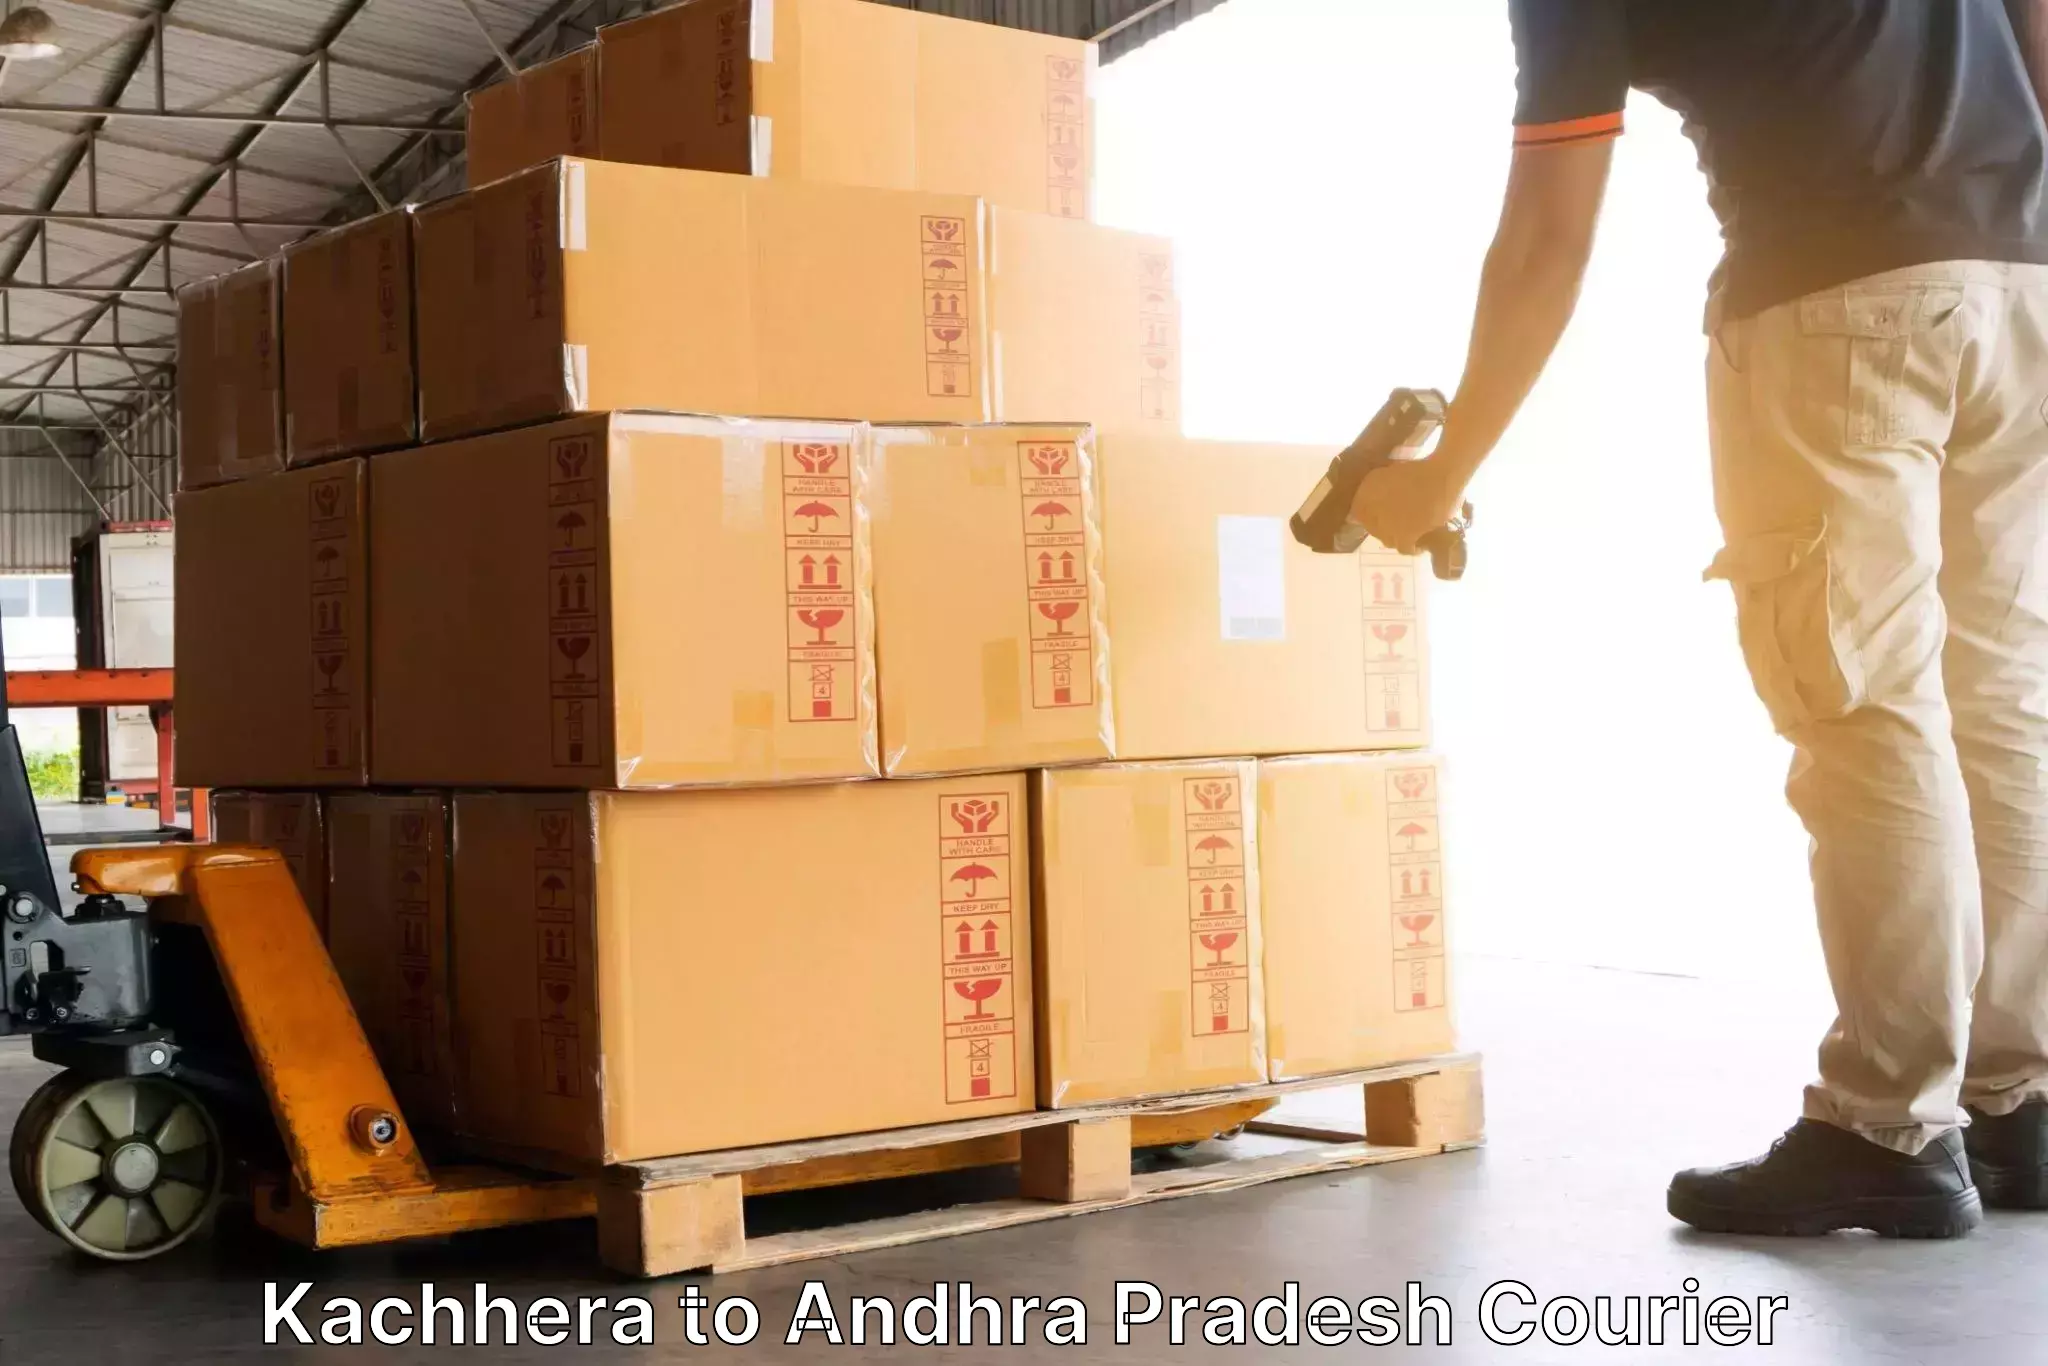 Next-generation courier services in Kachhera to Vidyanagar Nellore